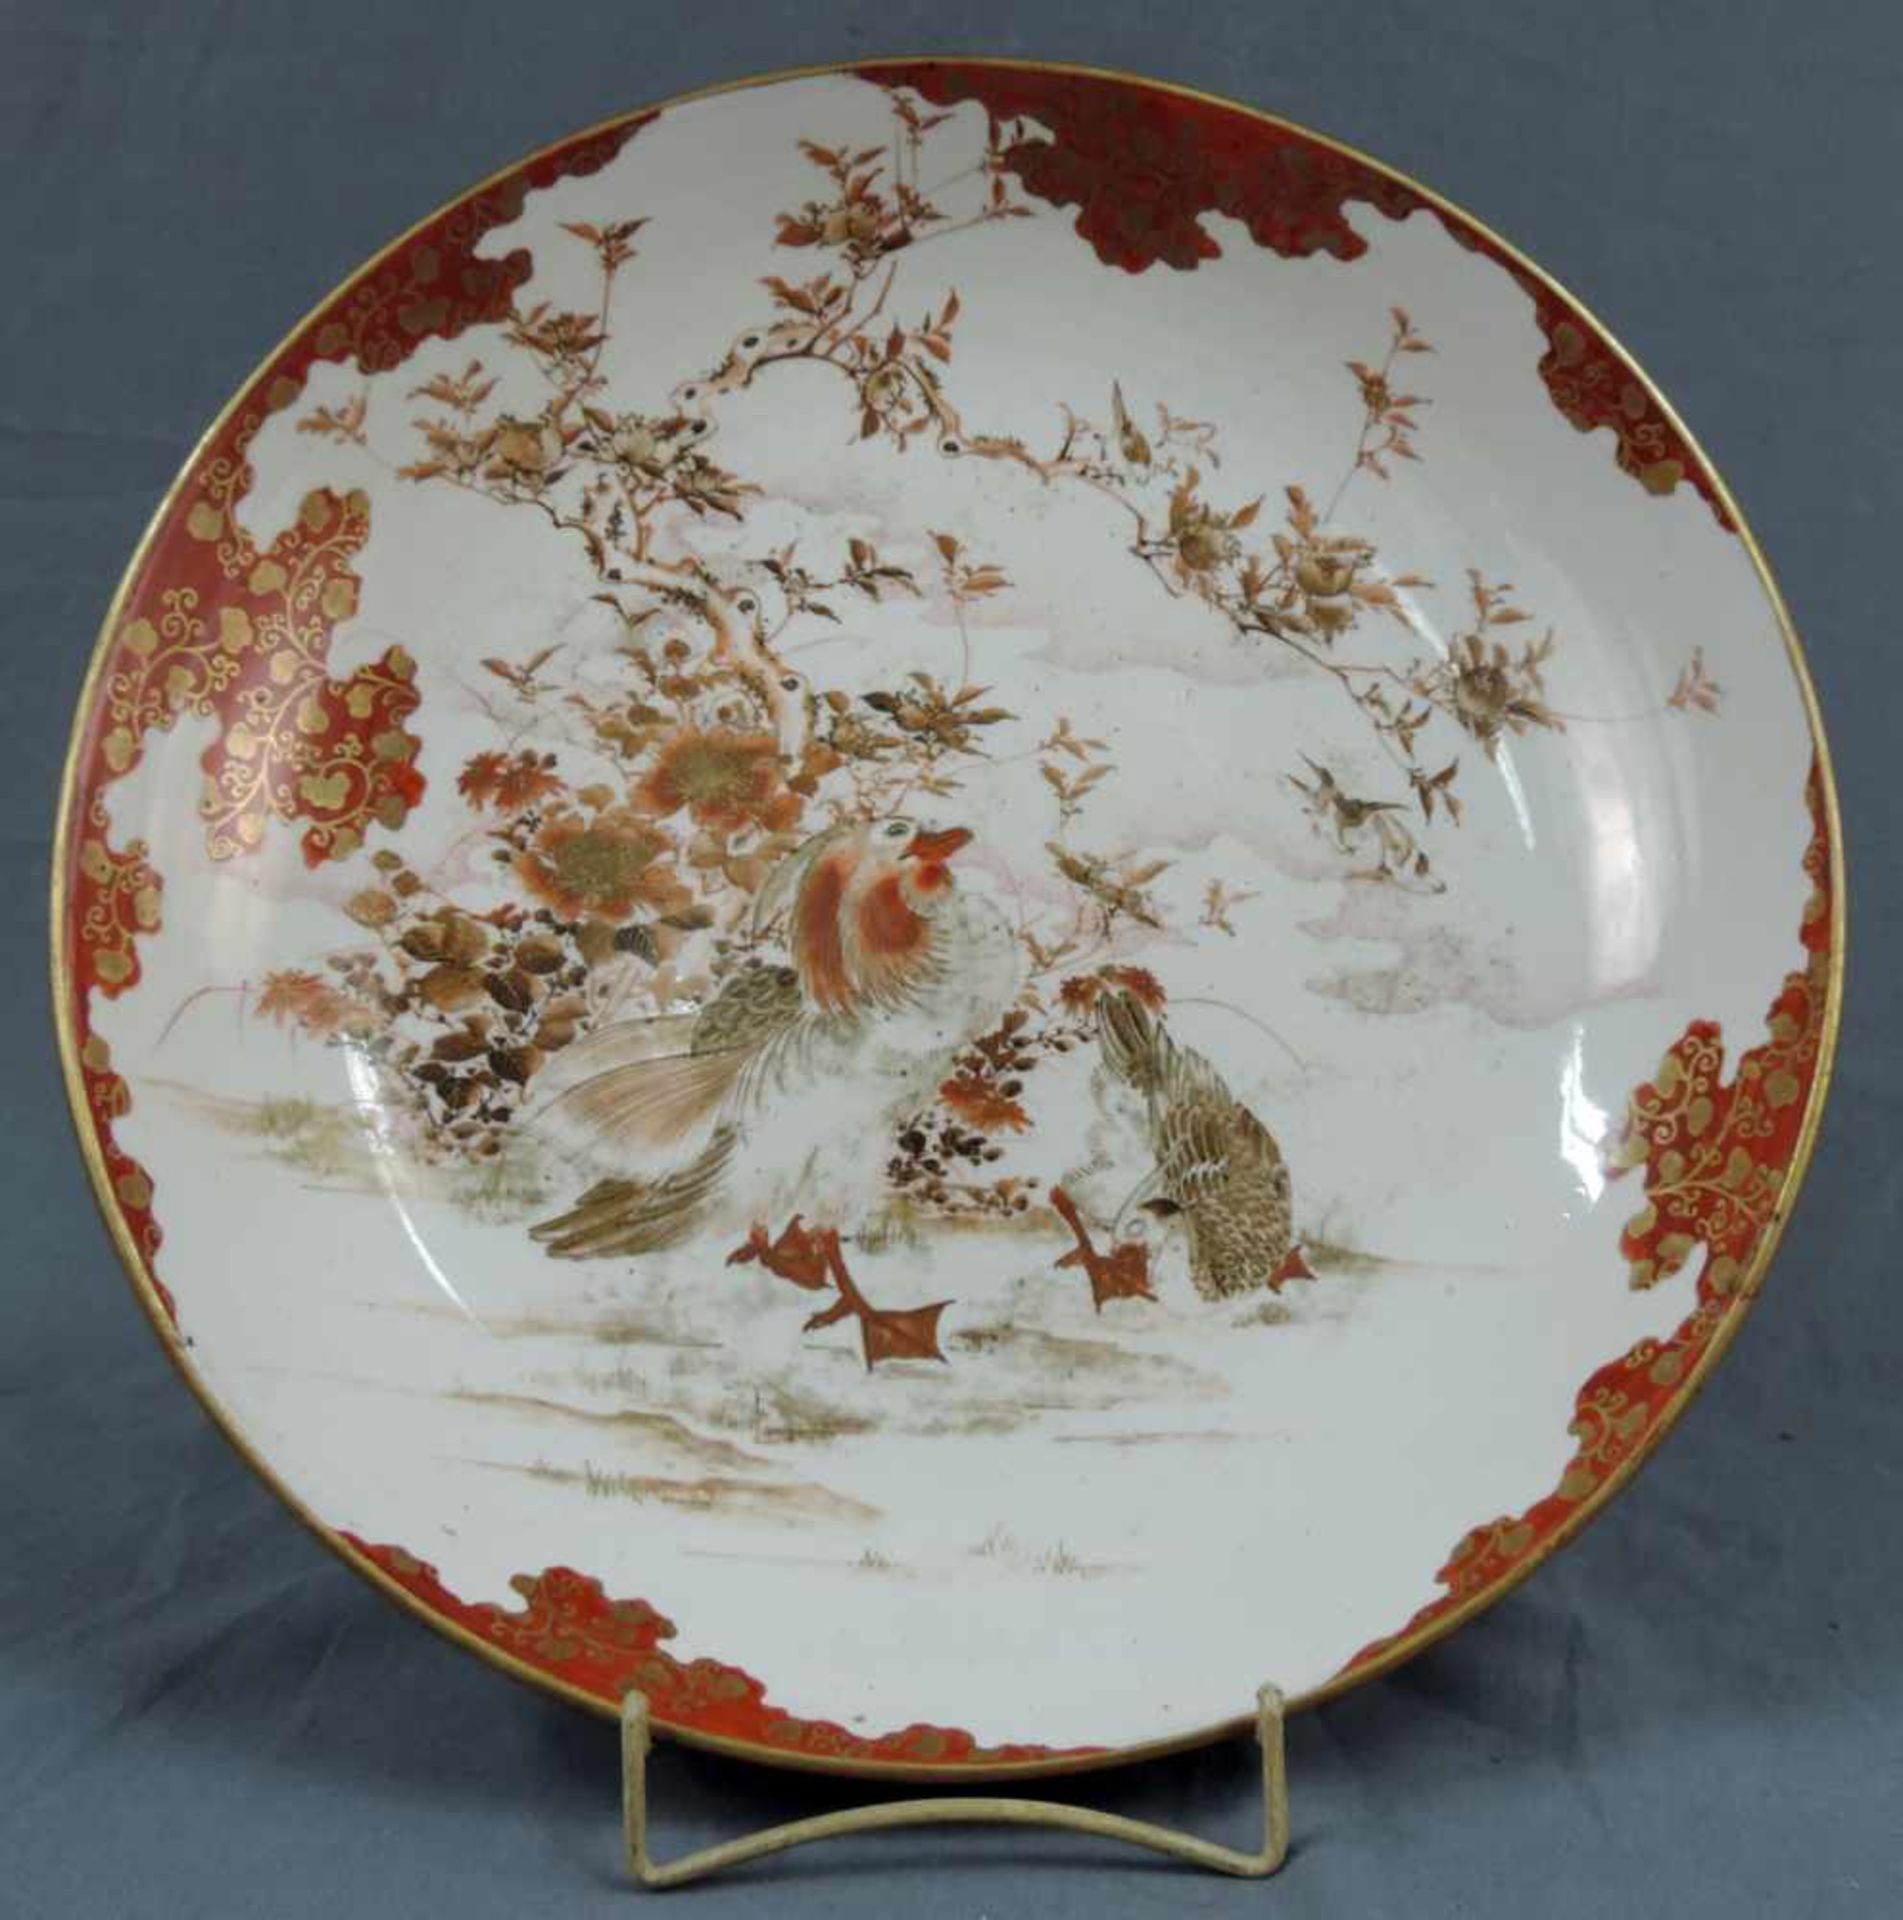 Großer Teller, Japan, Federvieh am Fluss. Porzellan. Durchmesser 40 cm. Plate Japan. Porcelain.